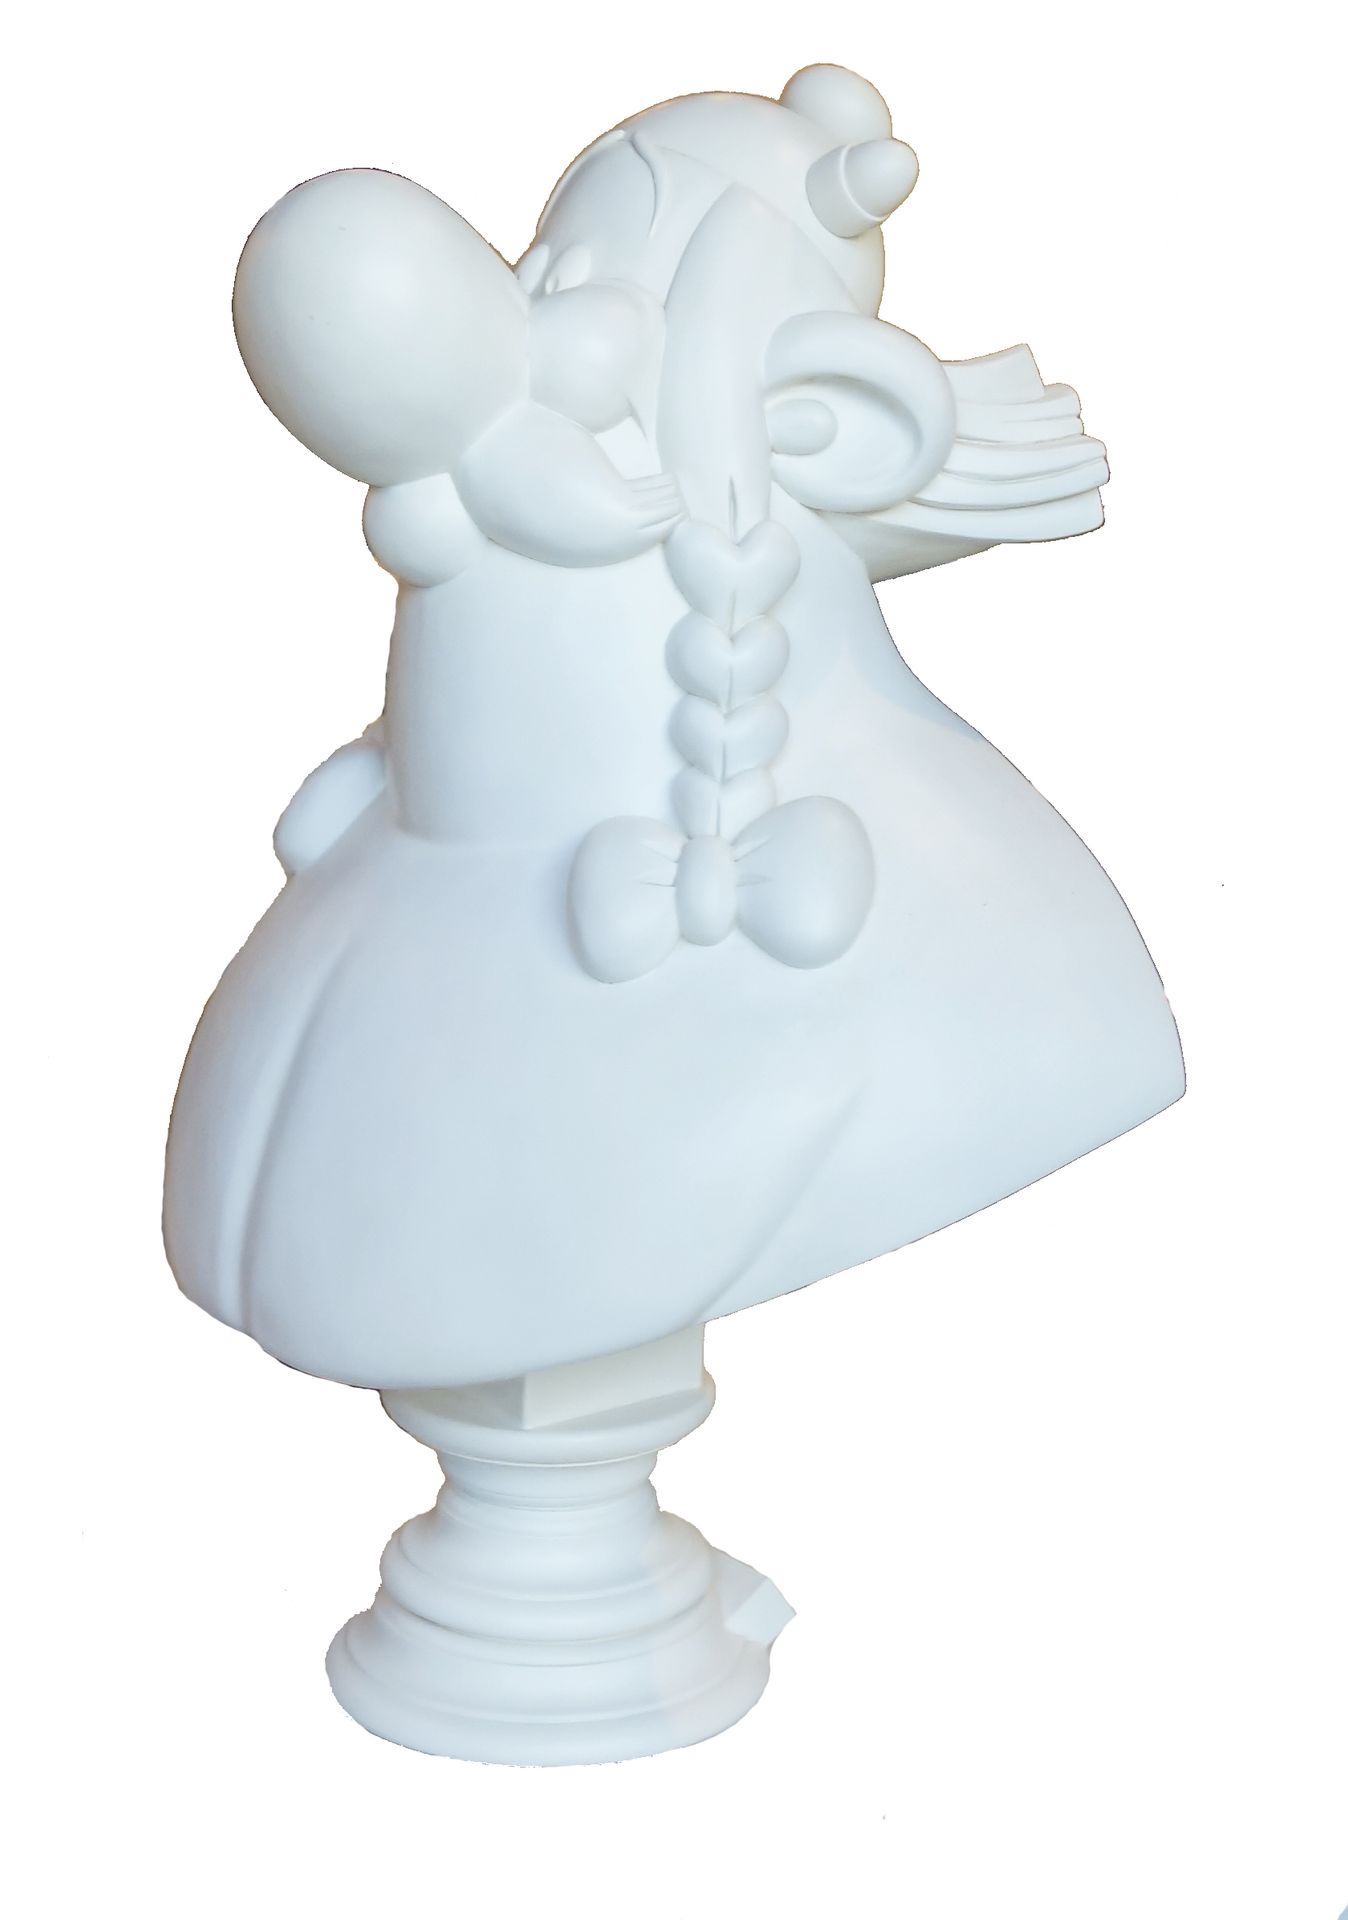 UDERZO 
ST EMETT : Astérix, le grand buste d'Obélix, monochrome blanc façon marb&hellip;